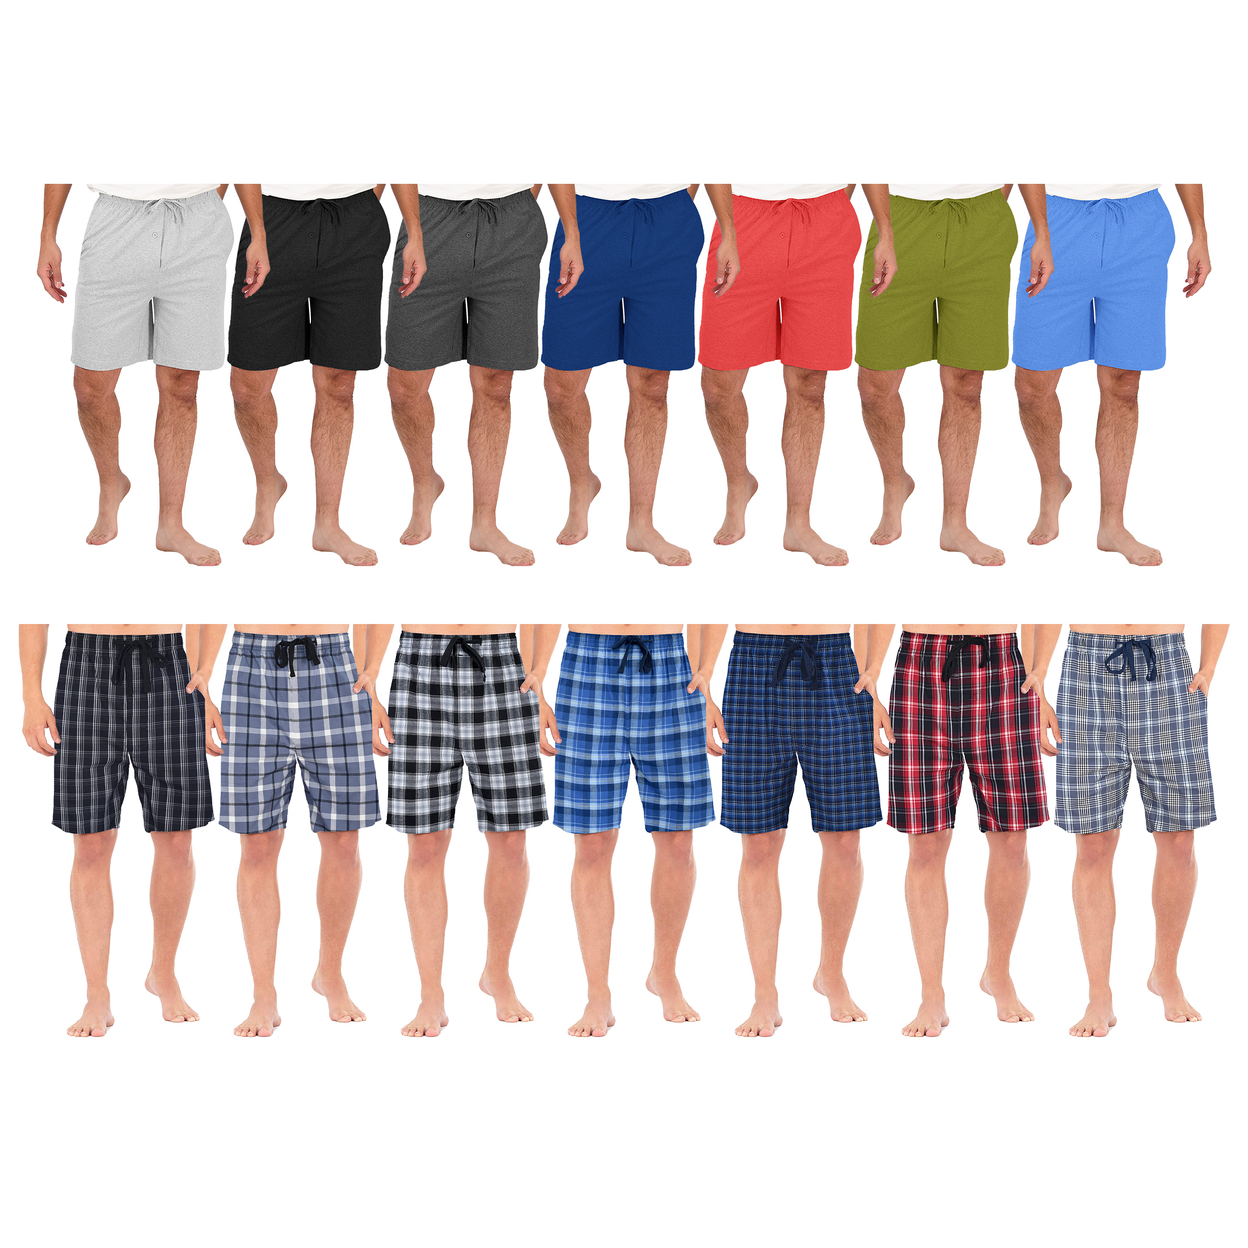 2-Pack: Men's Ultra Soft Knit Lounge Pajama Sleep Shorts - Plaid, Large